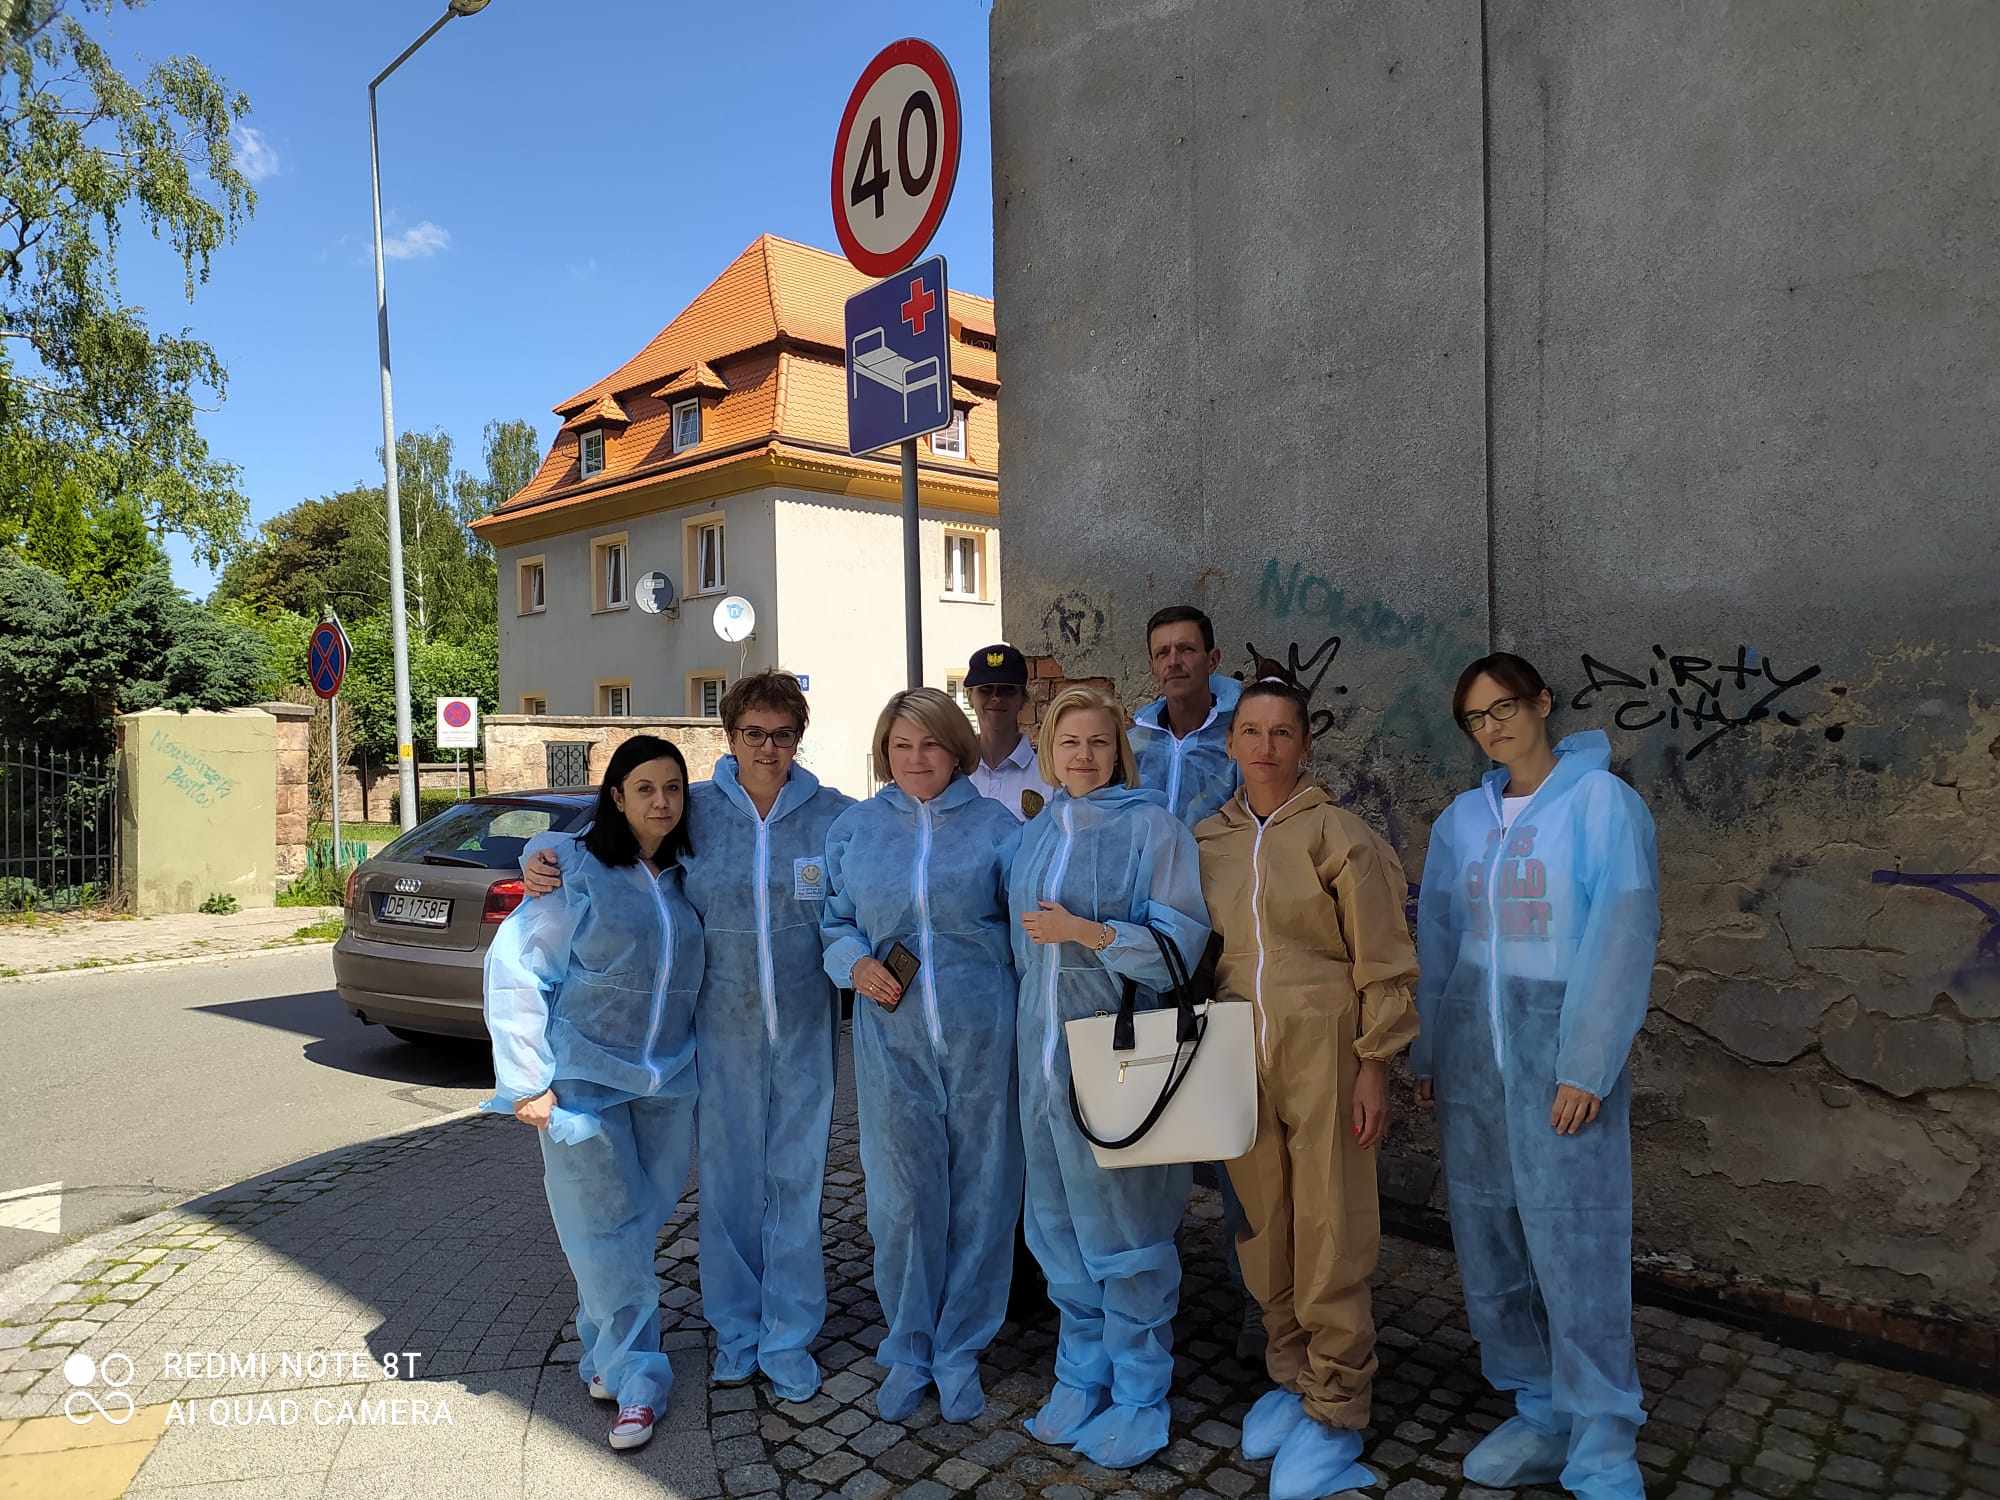 Na zdjęciu widać grupę osób przebranych w kombinezony, gotowych do malowania w dzielnicy Nowe Miasto